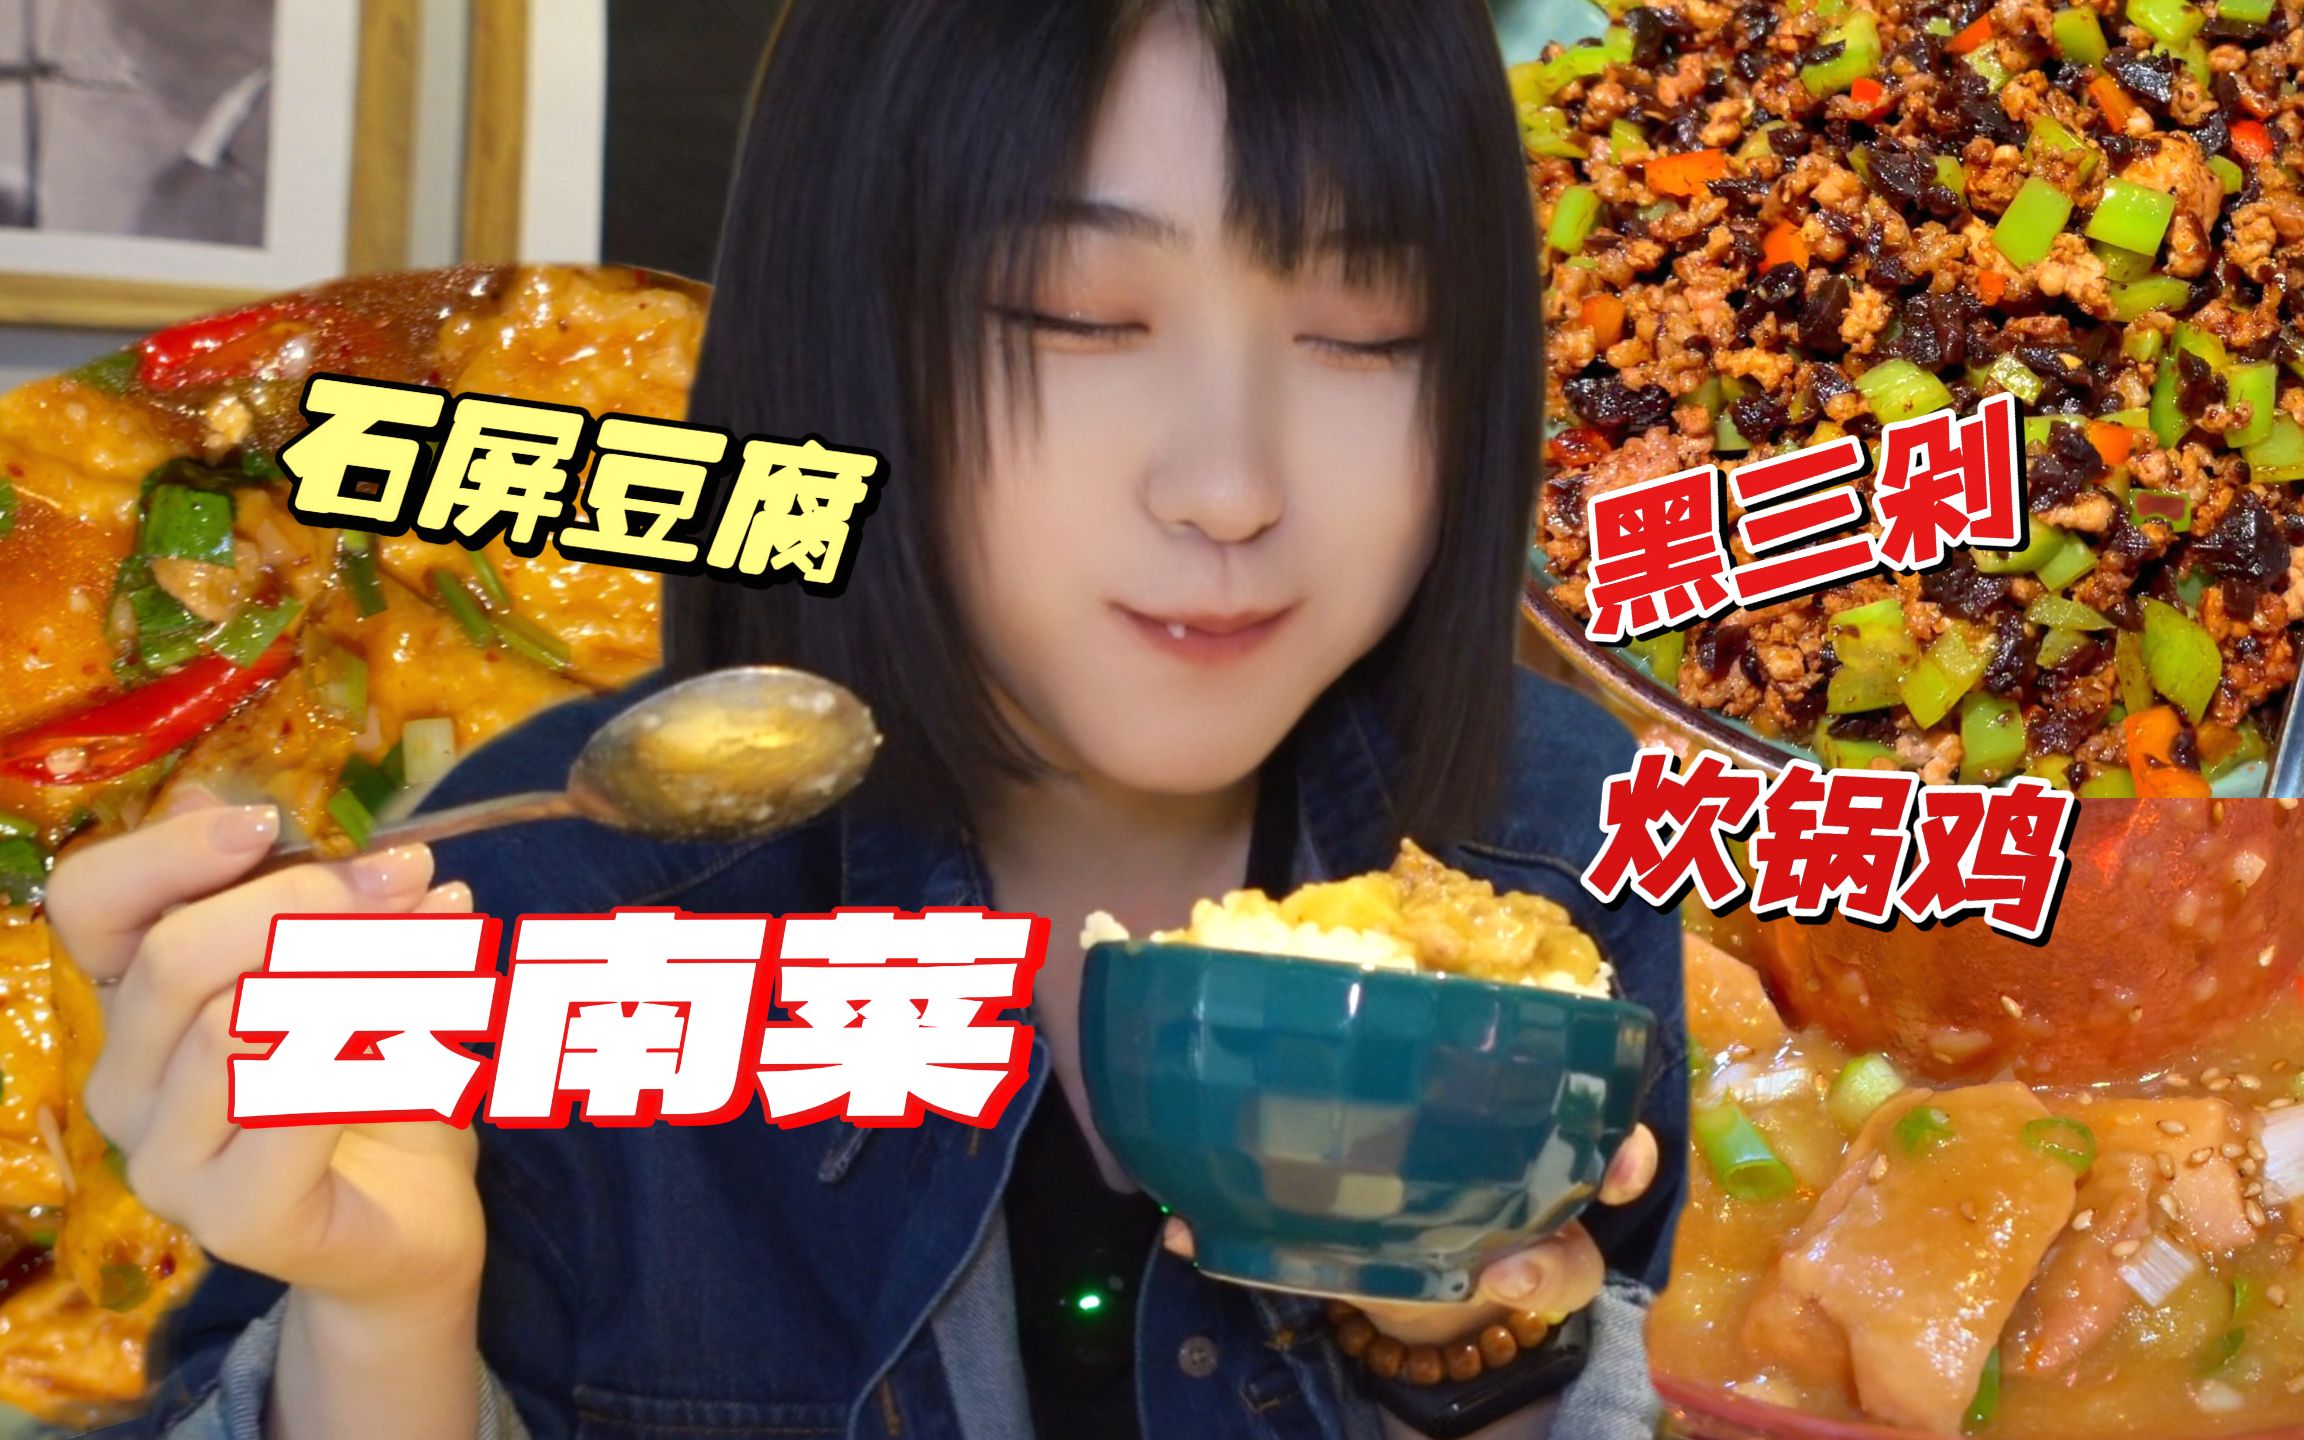 云南: 被遗忘的美食——炊锅! 很难再看到了!